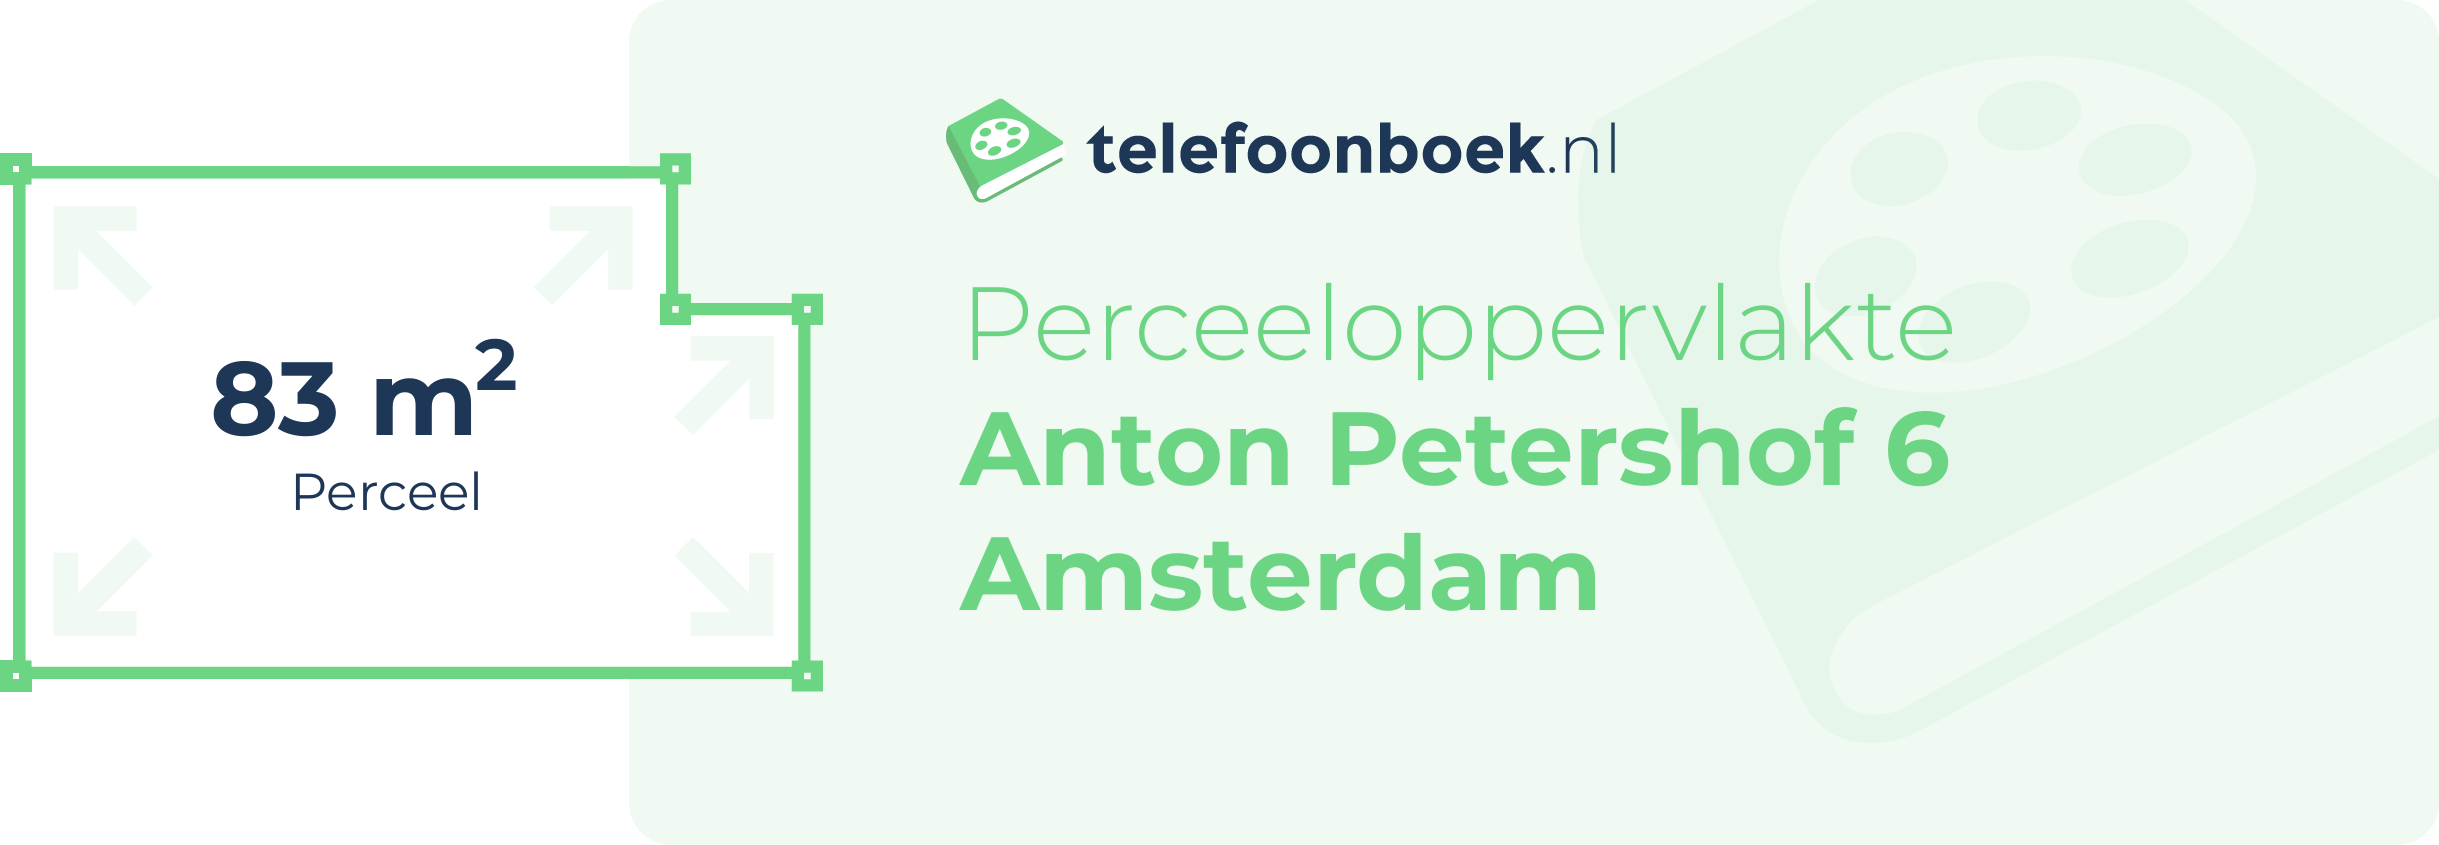 Perceeloppervlakte Anton Petershof 6 Amsterdam